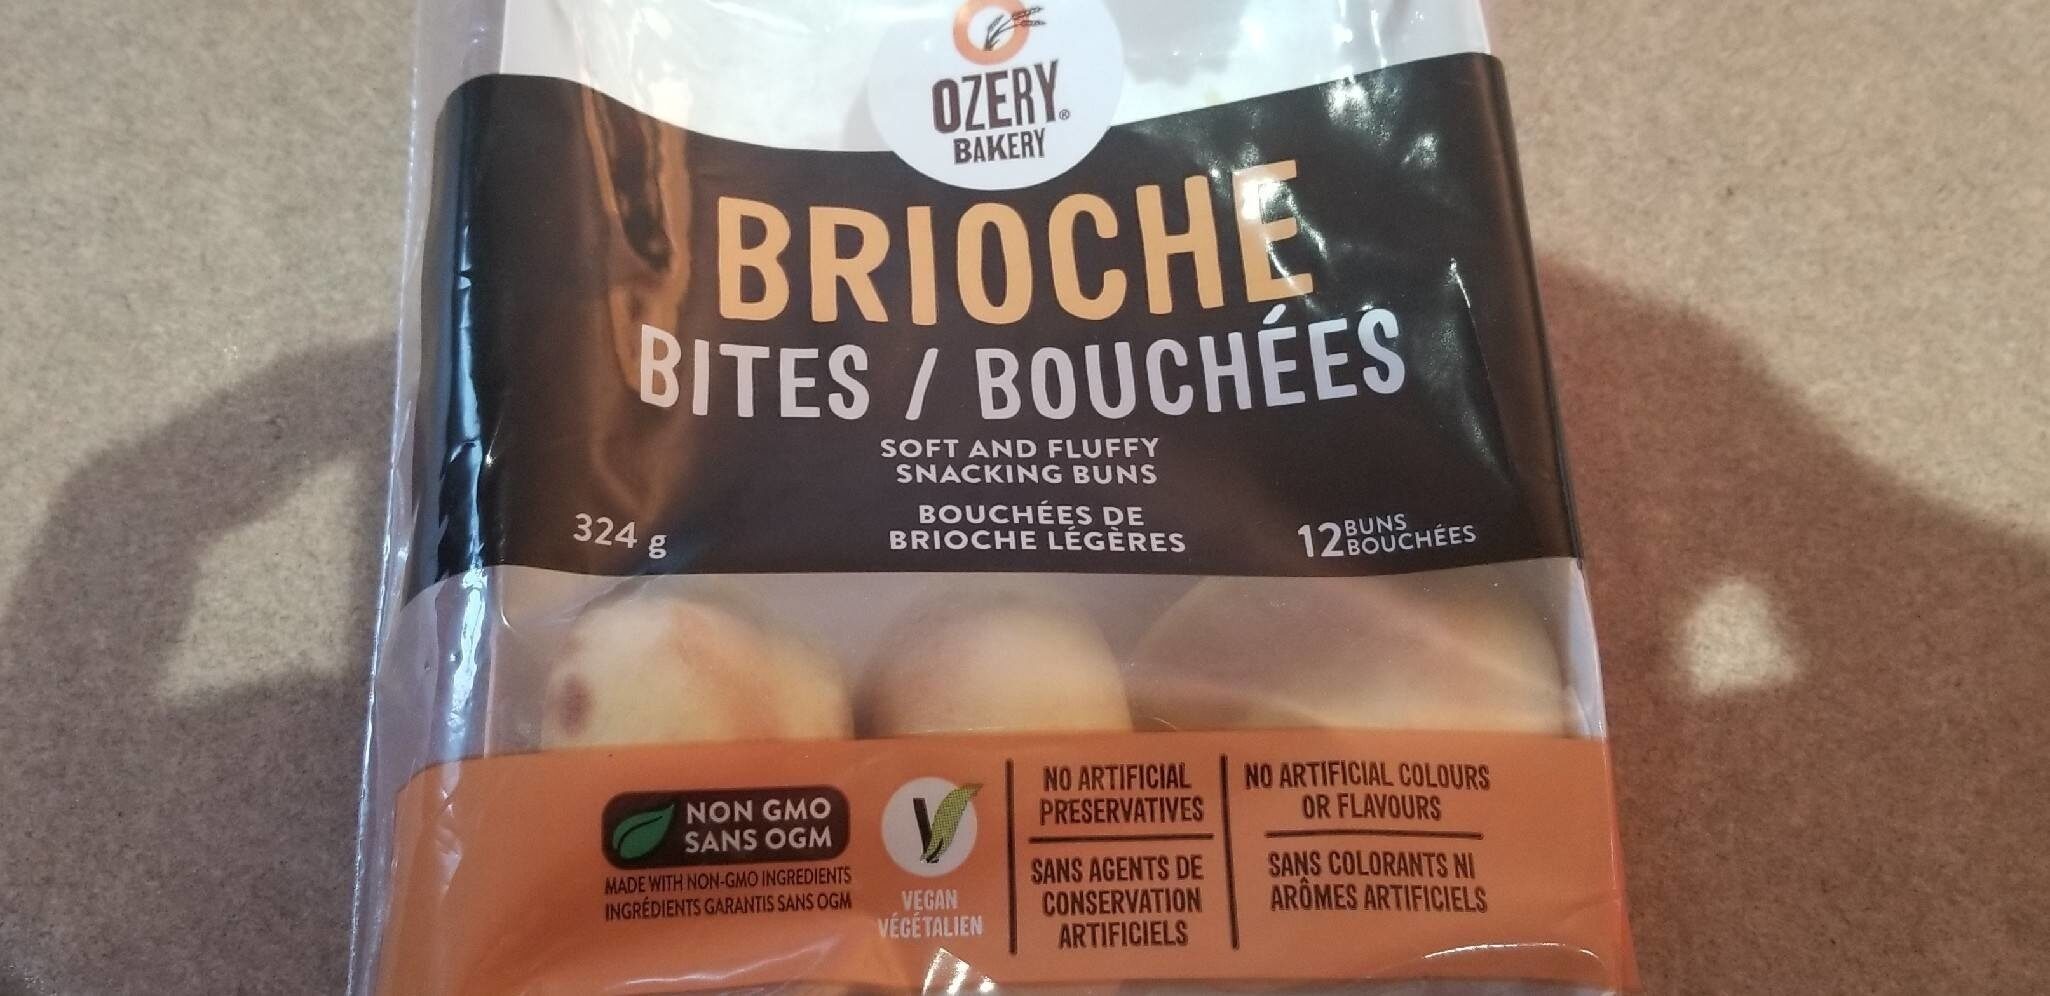 Brioche Bites / Bouchées - Product - fr